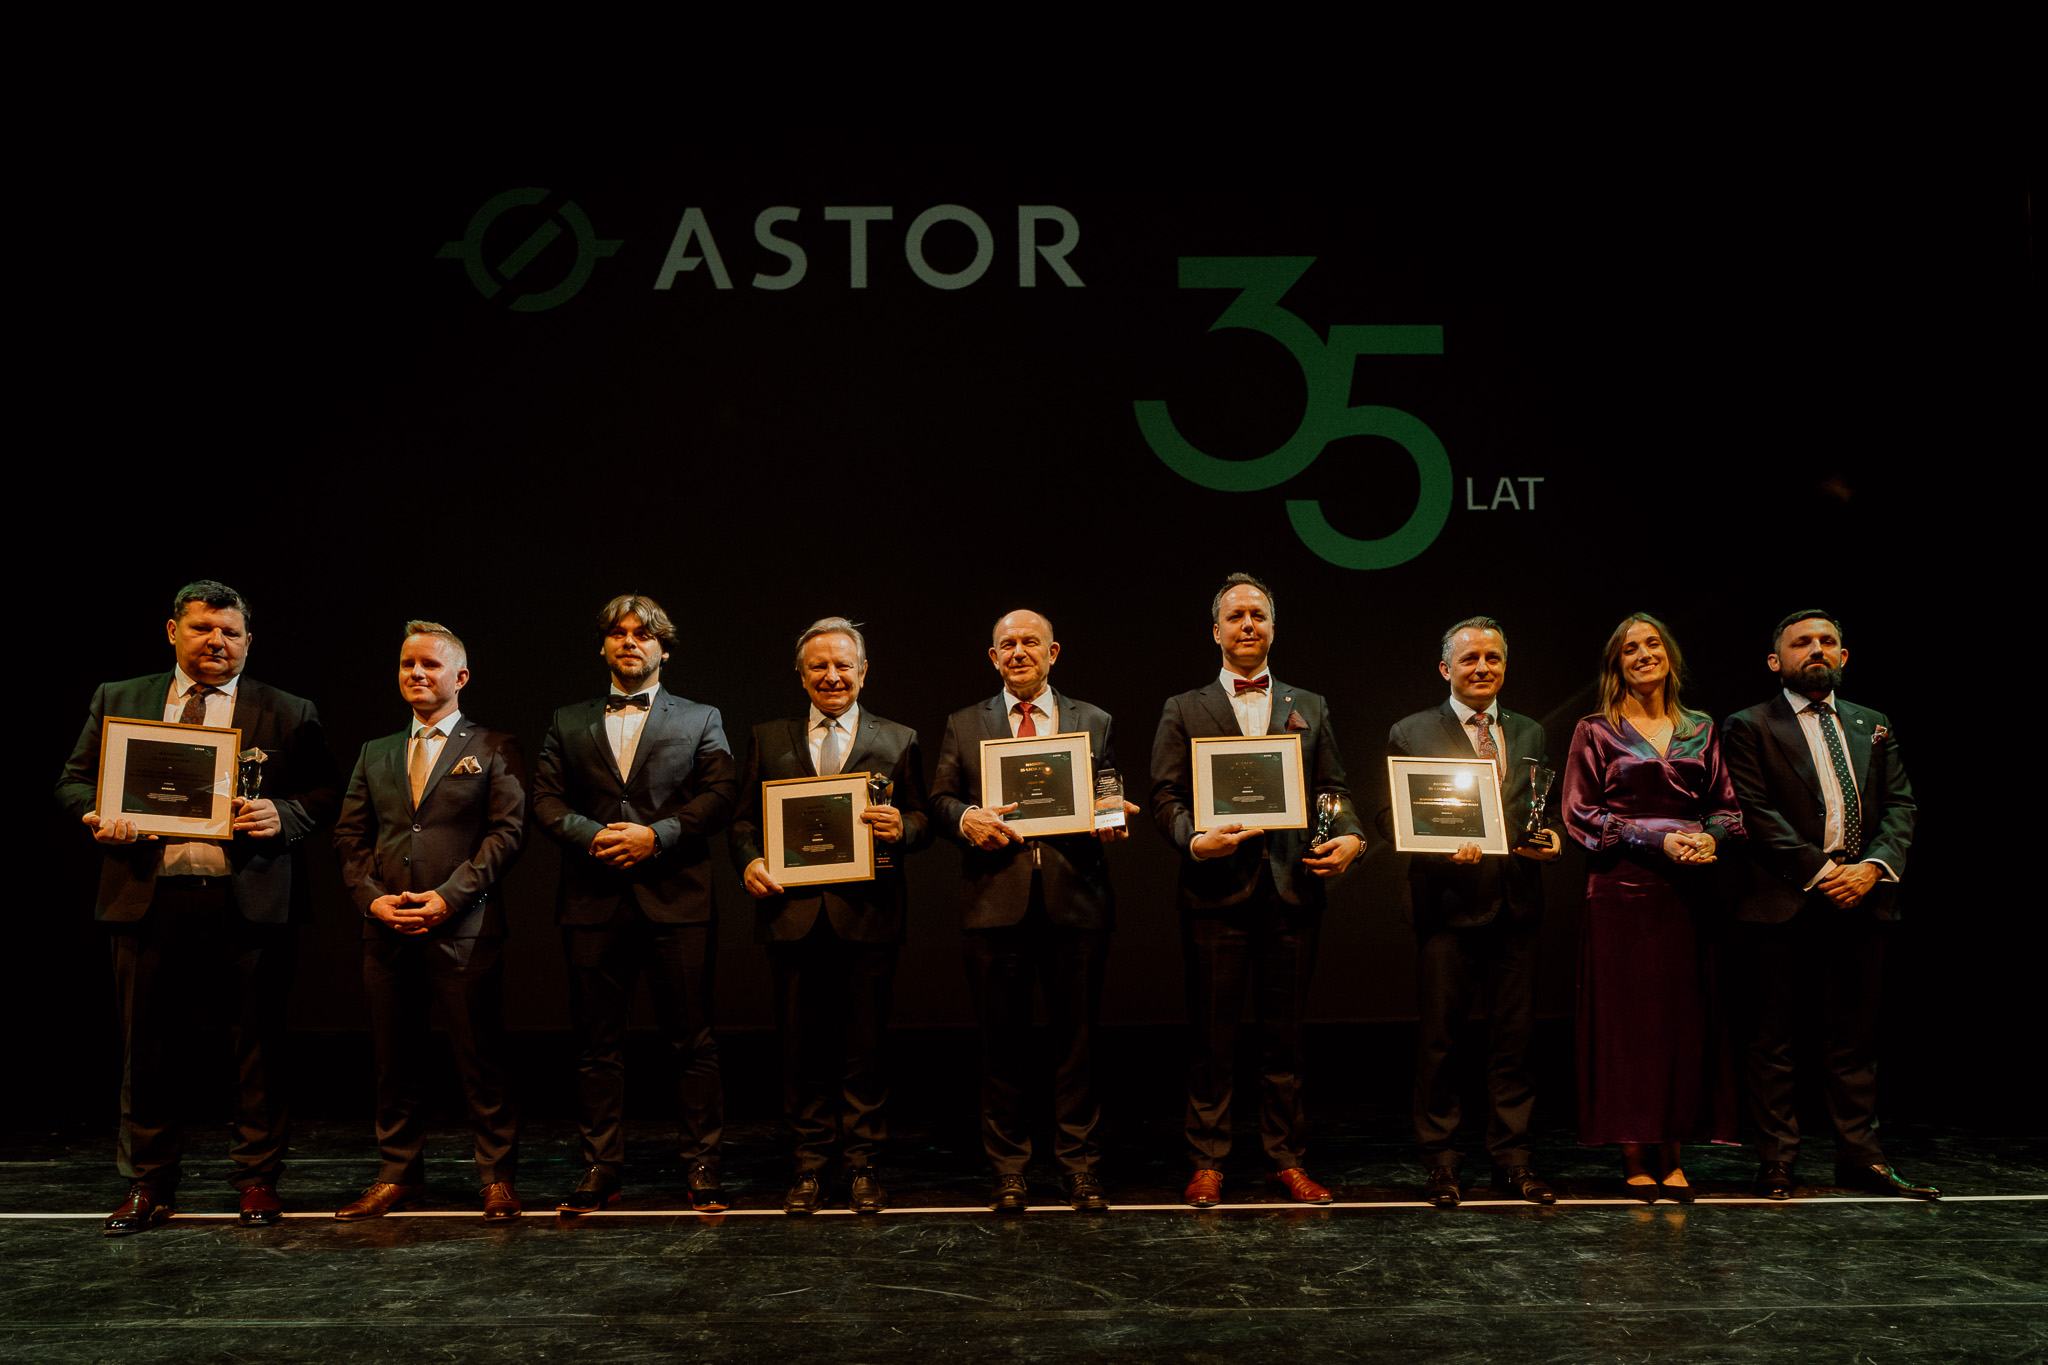 Ośmiu mężczyzn w garniturach i jedna blondynka w długiej fioletowej sukni. Stoją na scenie. Wśród nich jest prof. Sładek. Część osób trzyma w rękach dyplomy. W tle logotyp firmy ASTOR i napis „35 lat”. 